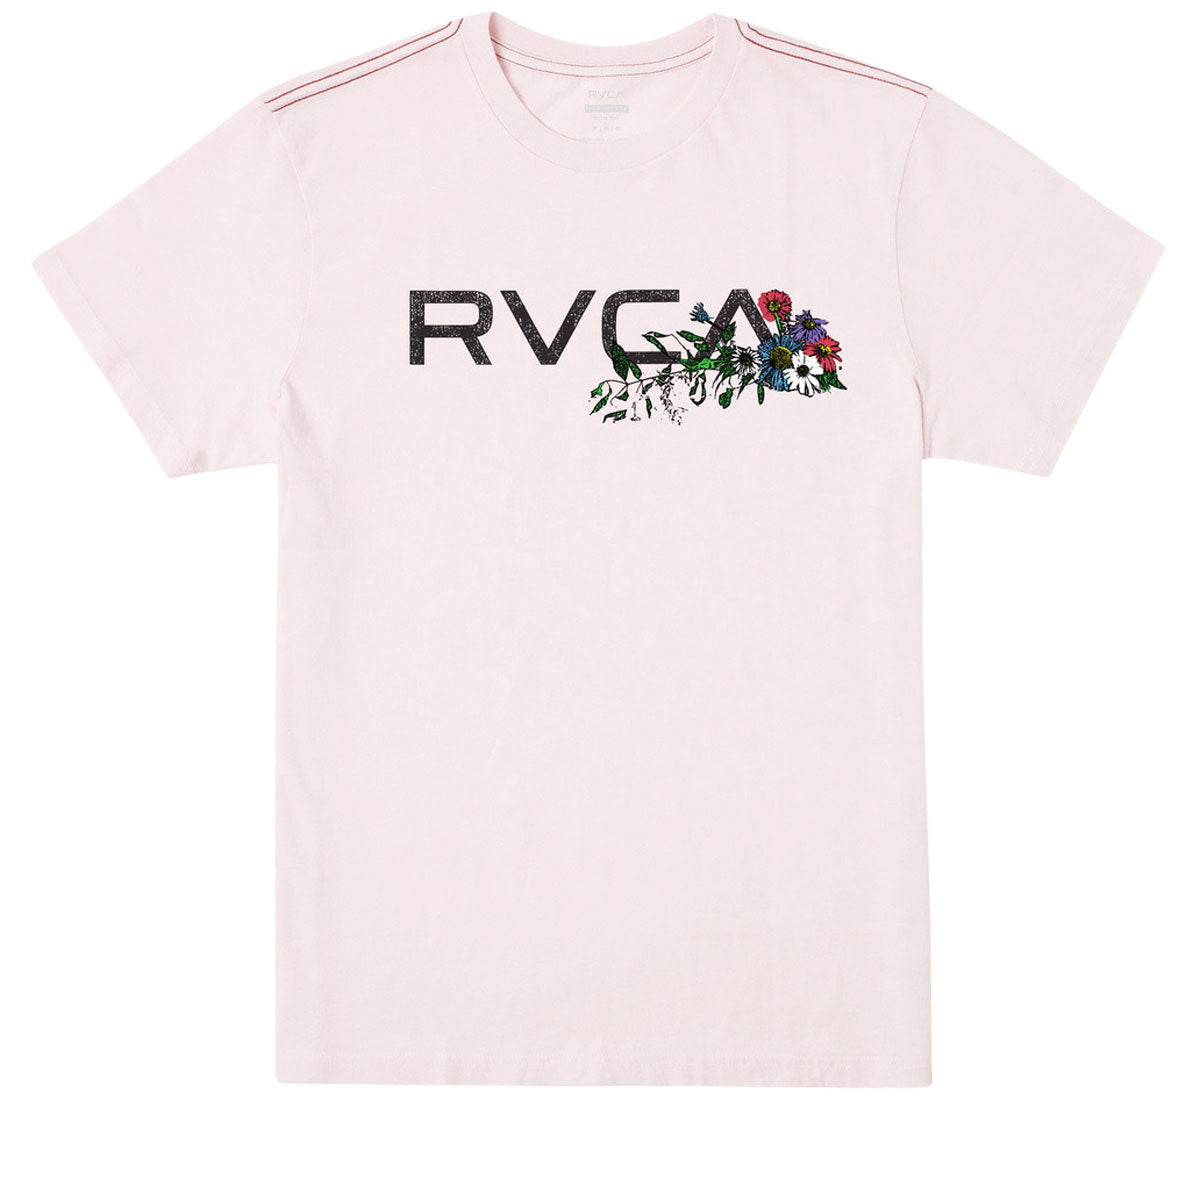 RVCA Arrangement T-Shirt - Light Pink image 1